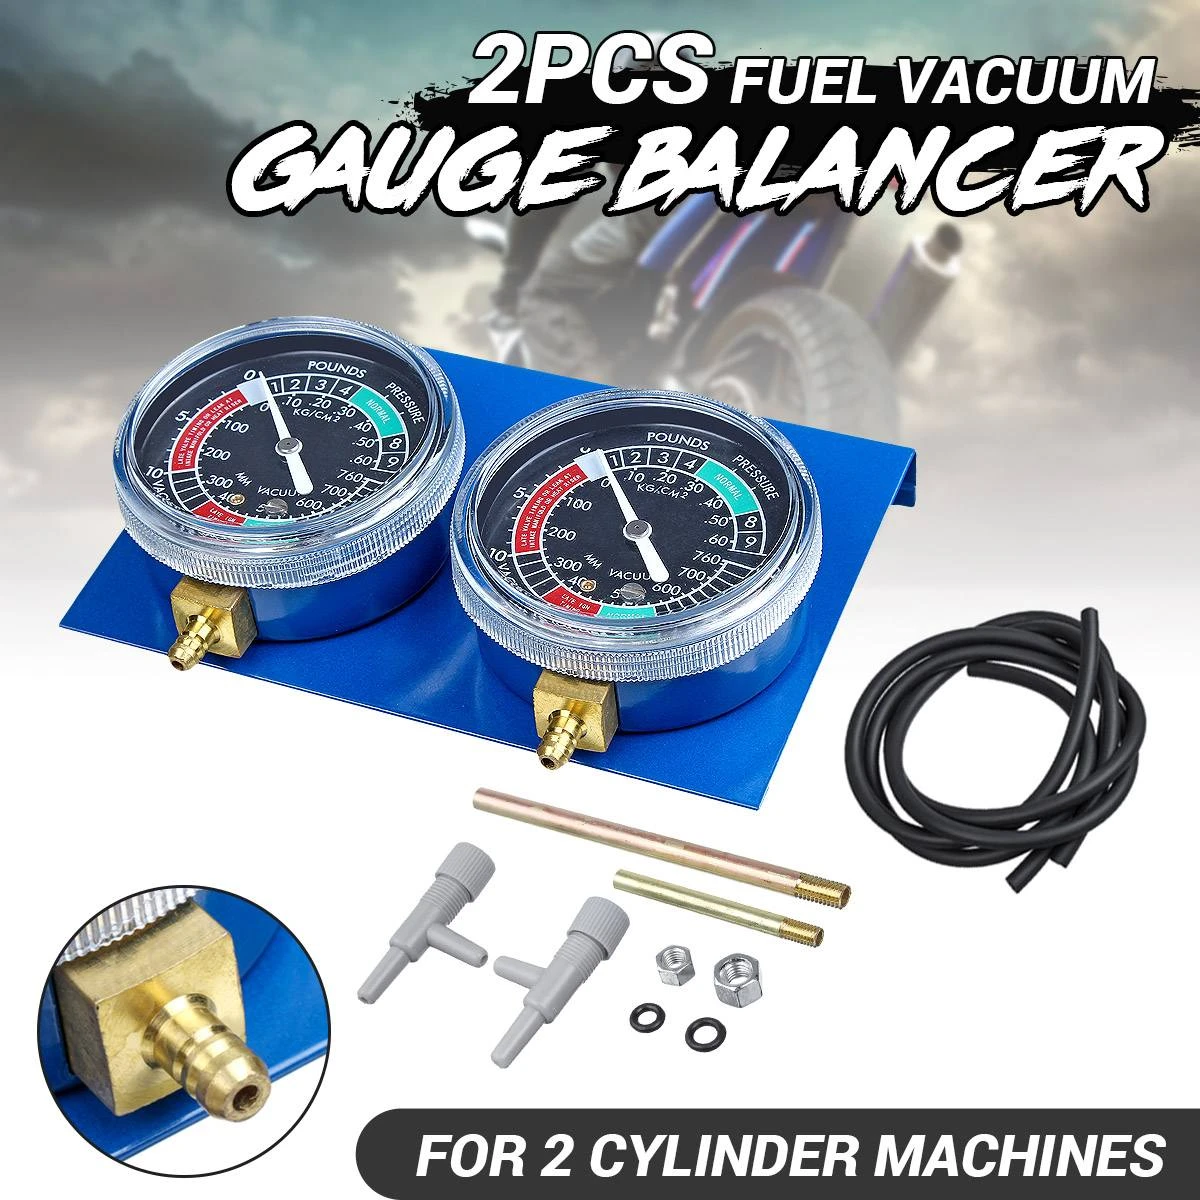 2pcs/4Pcs Motorcycle Carburetor Vacuum Gauge Balancer Synchronizer Tool W/Hose Kit For Honda/Yamaha/Suzuki/Harley